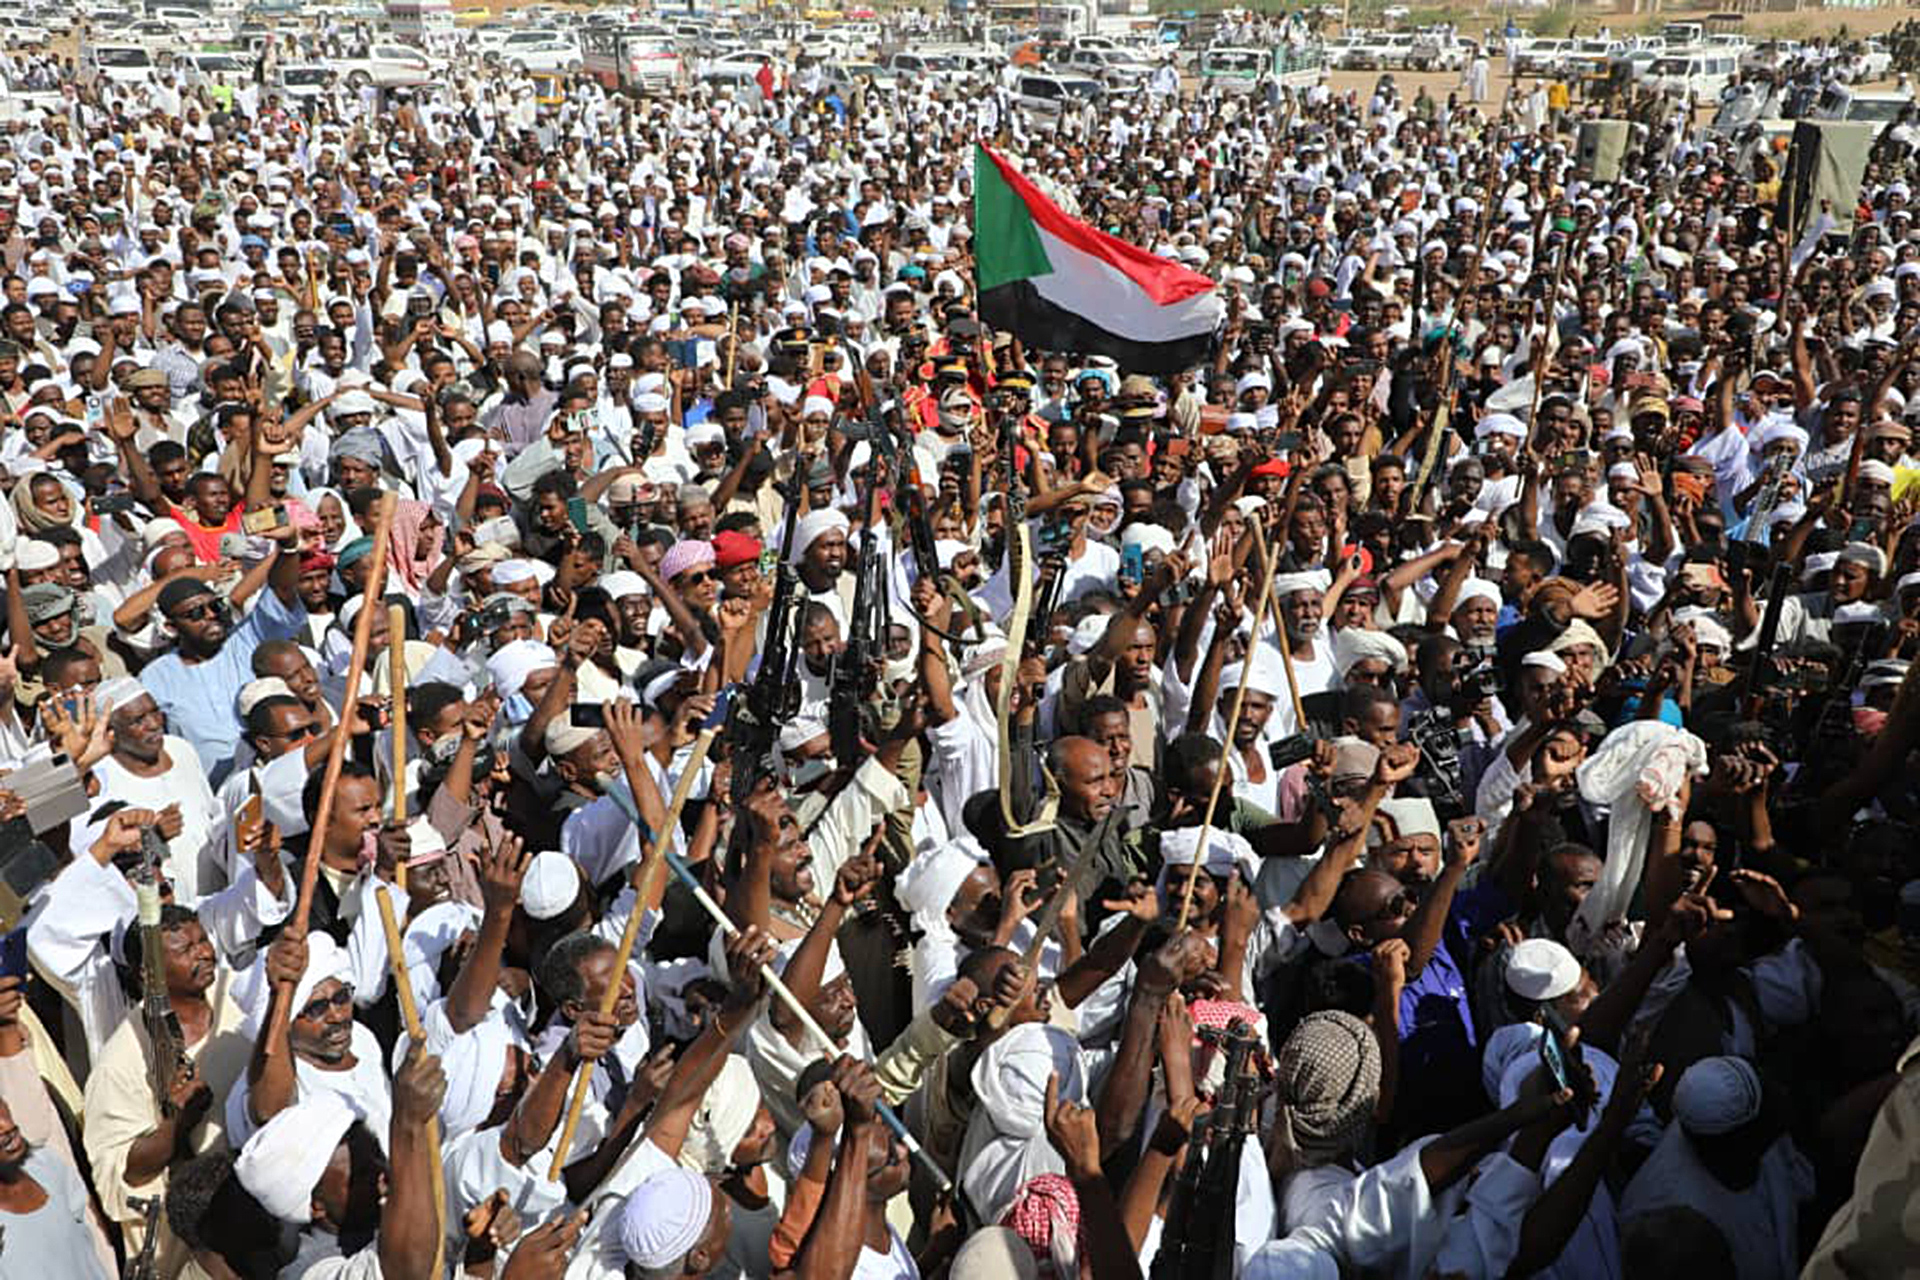 المرافق الصحية بود مدني خارج الخدمة وتعبئة شعبية داعمة للجيش السوداني | أخبار – البوكس نيوز